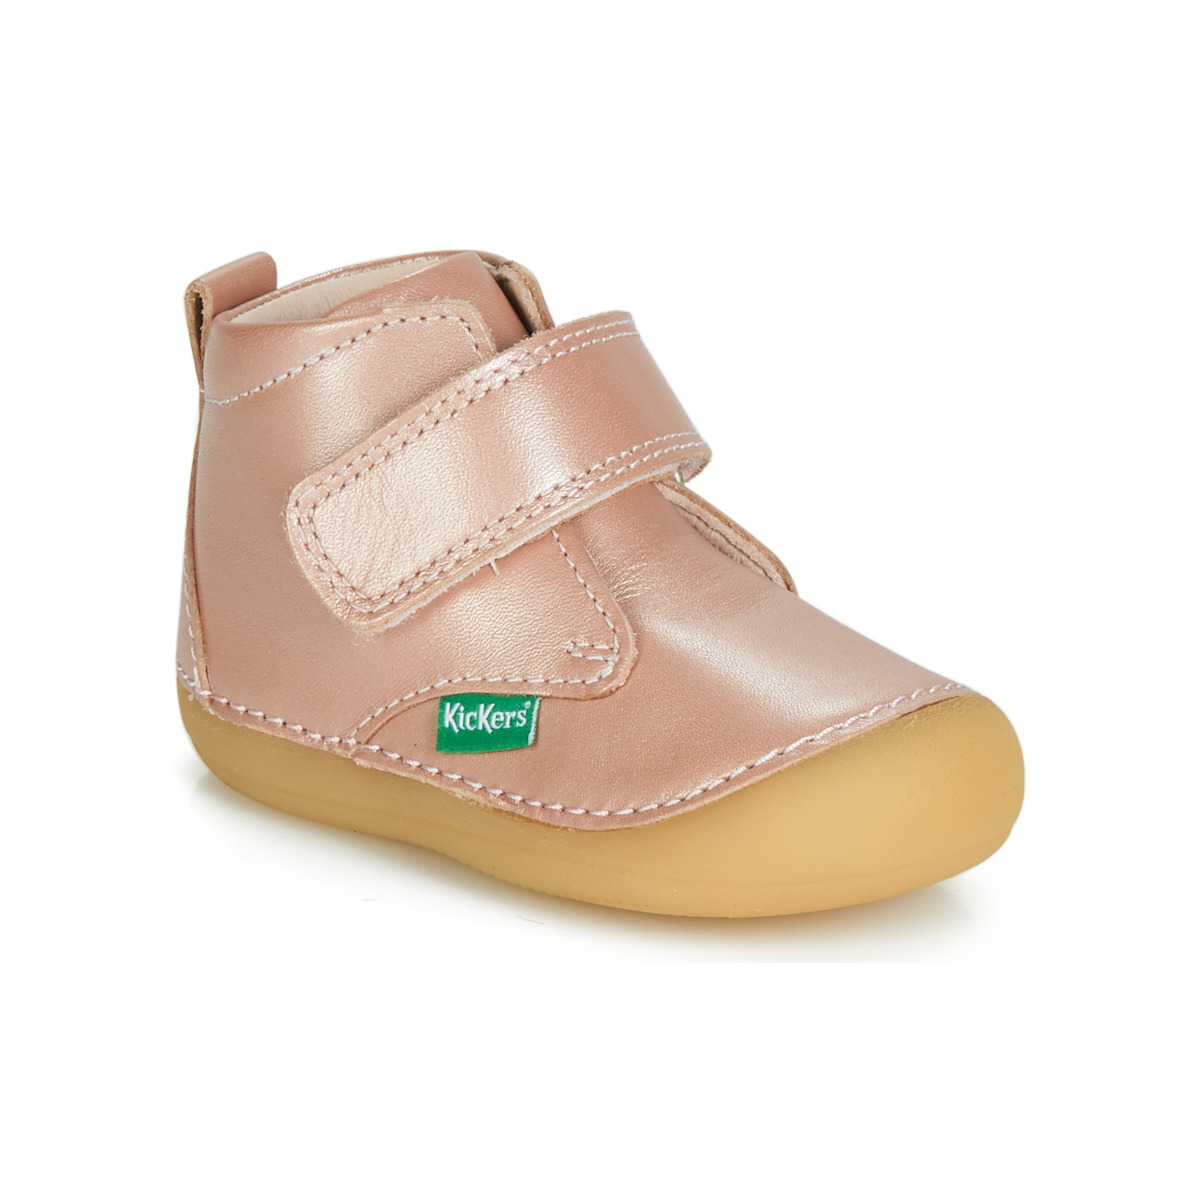 kengät Tytöt Bootsit Kickers SABIO Vaaleanpunainen